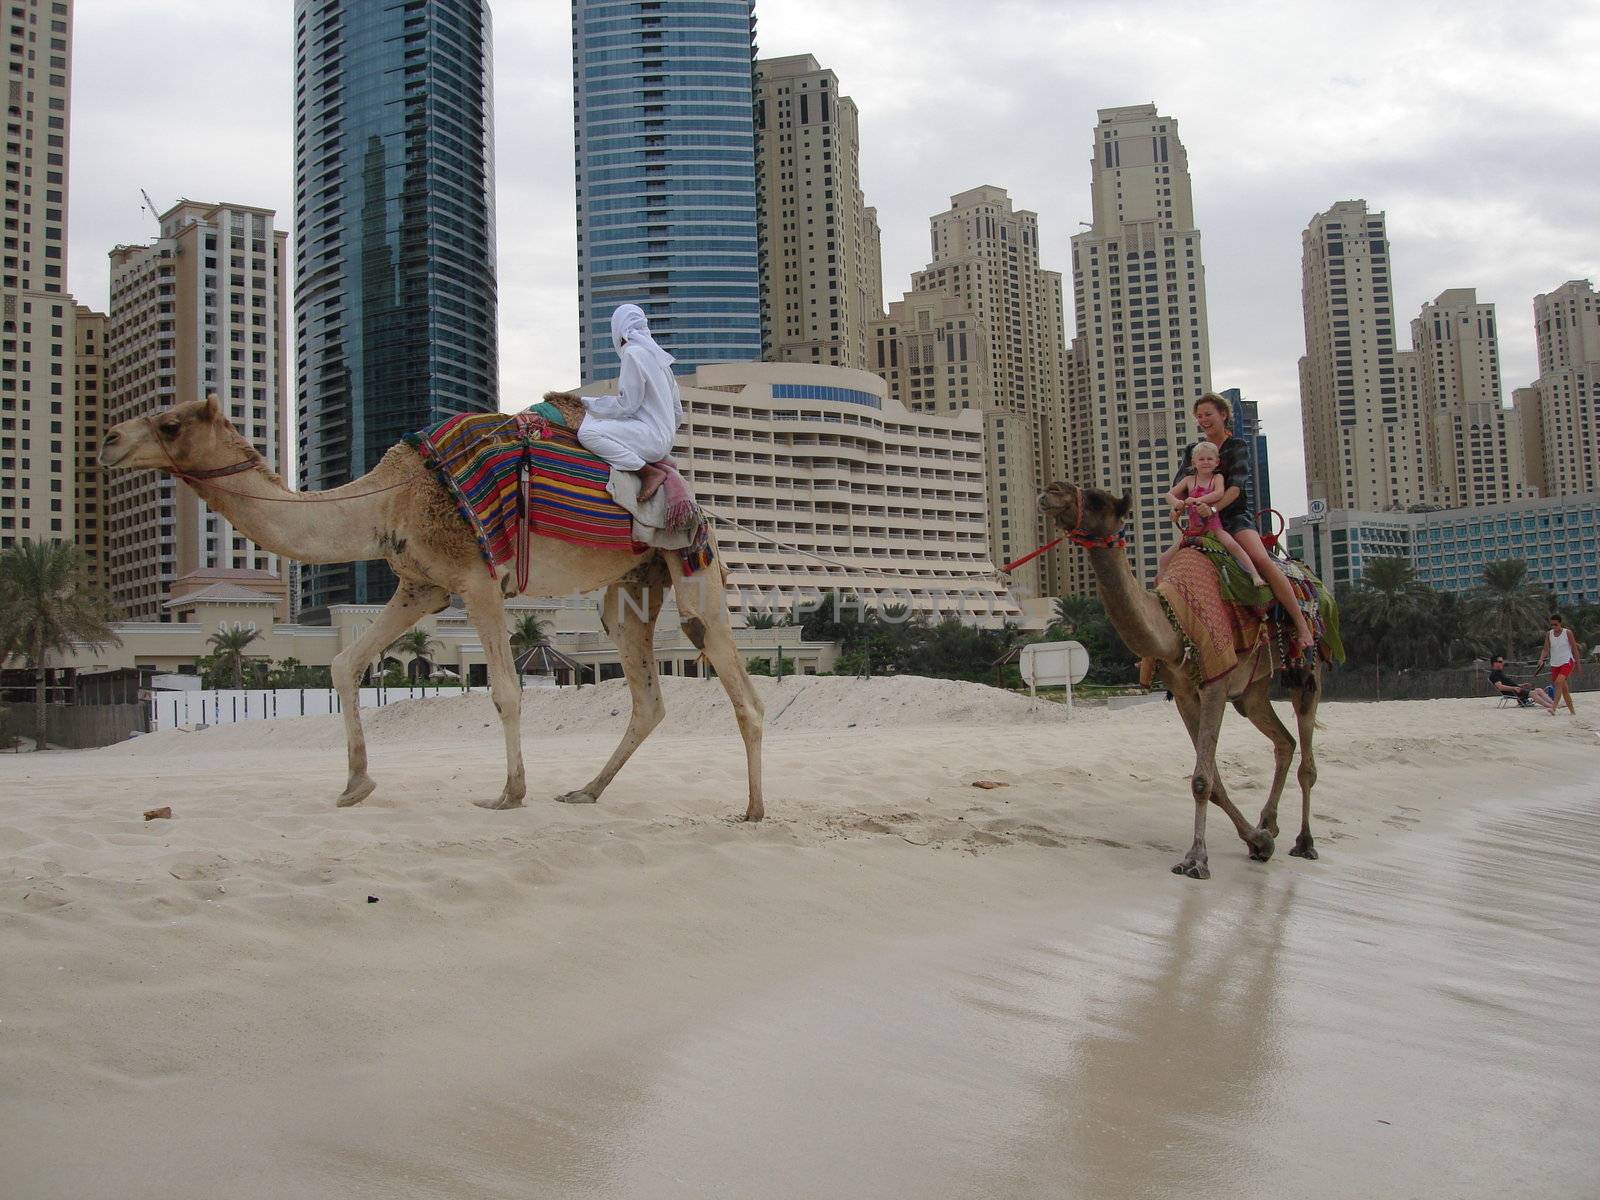 riding camels on the beach, Dubai